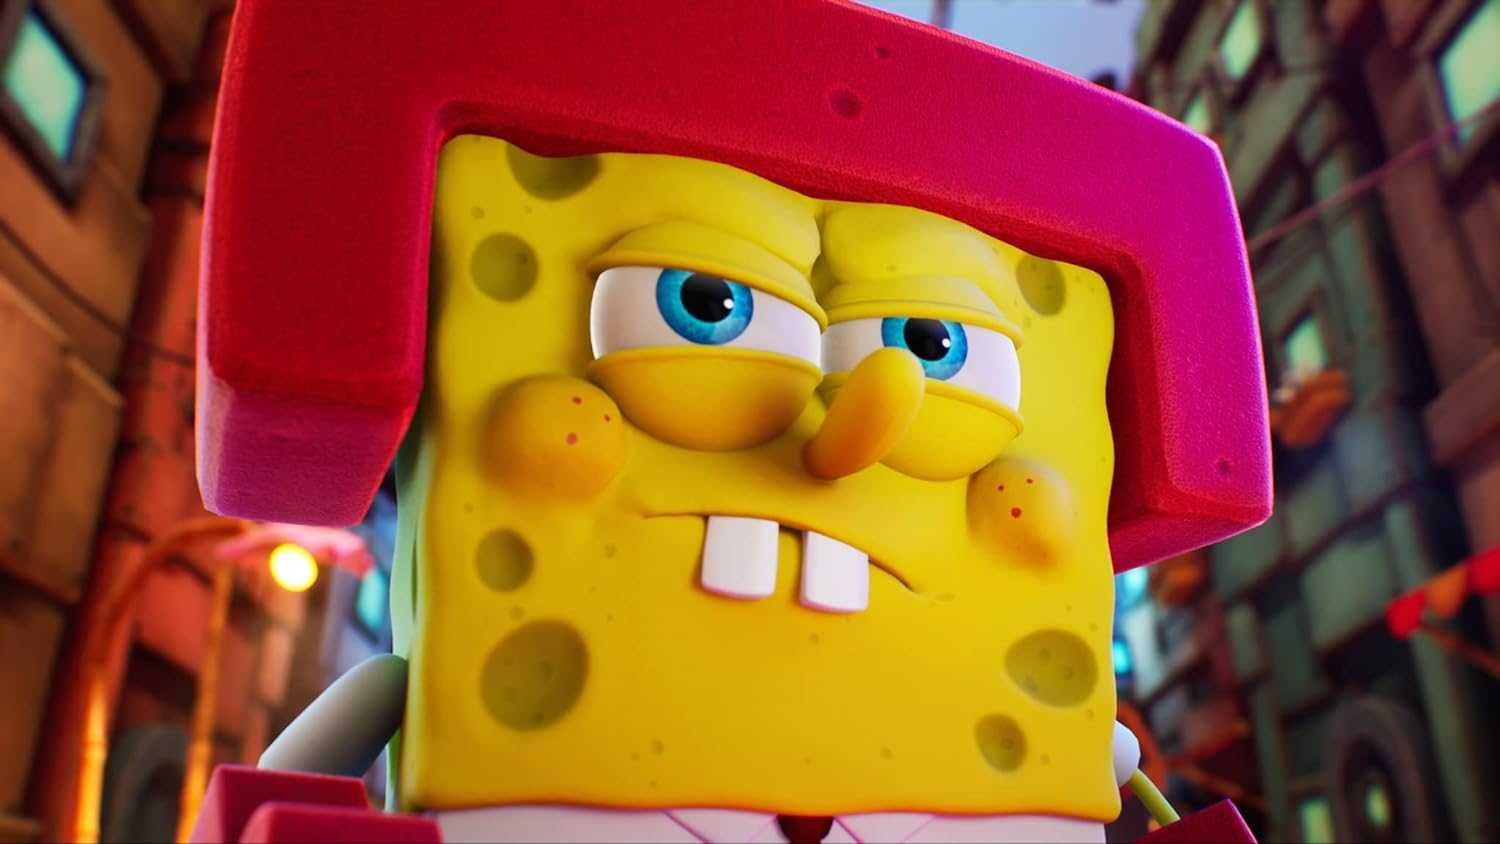 SpongeBob Kanciastoporty: The Cosmic Shake Nintendo Switch dla dzieci